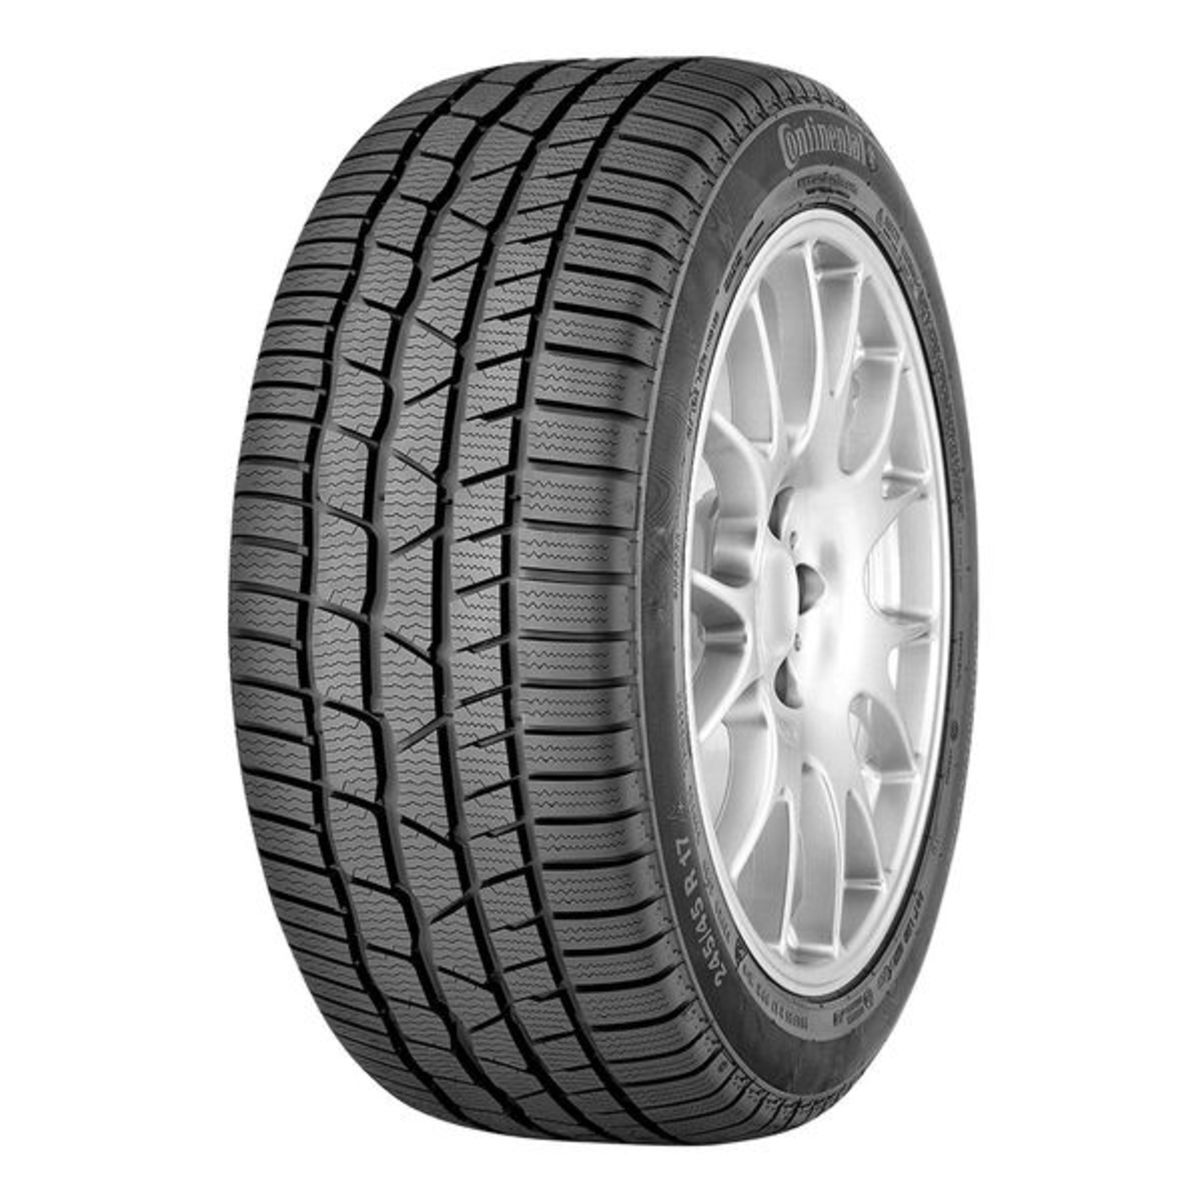 Neumáticos de invierno CONTINENTAL ContiWinterContact TS 830 P 225/50R18 XL 99H